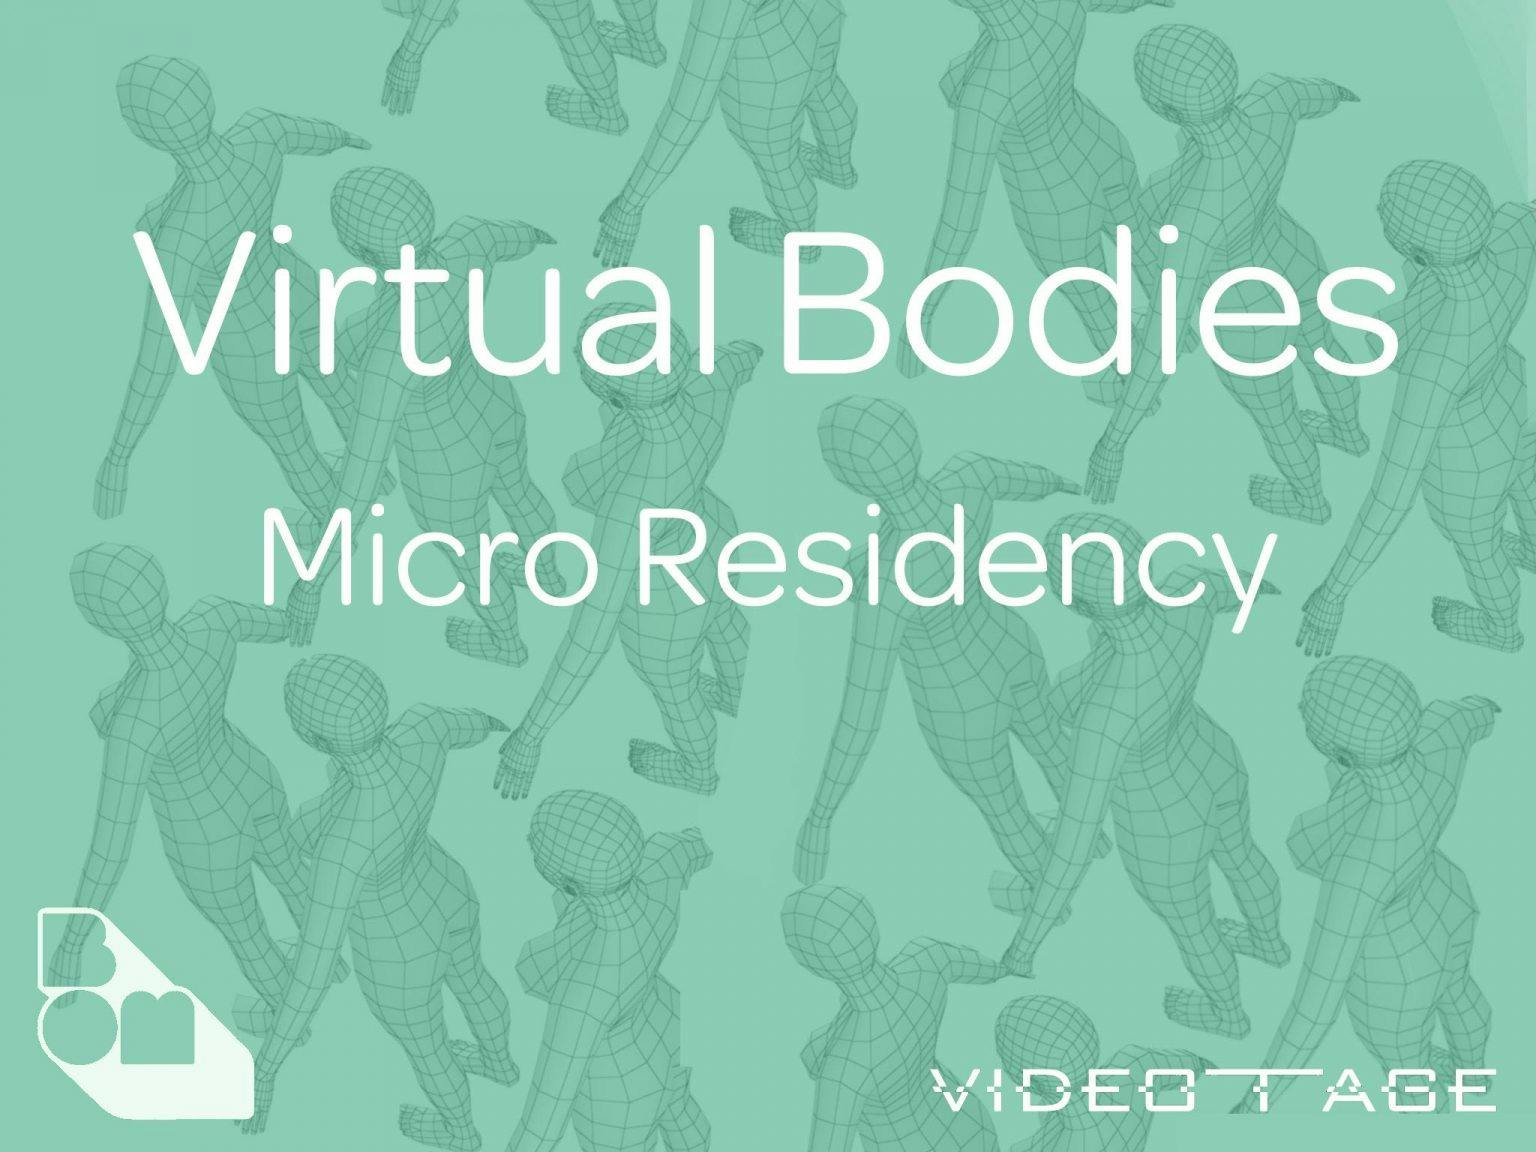 Virtual Bodies Online Micro Residency Virtual Bodies 網上微駐留計劃